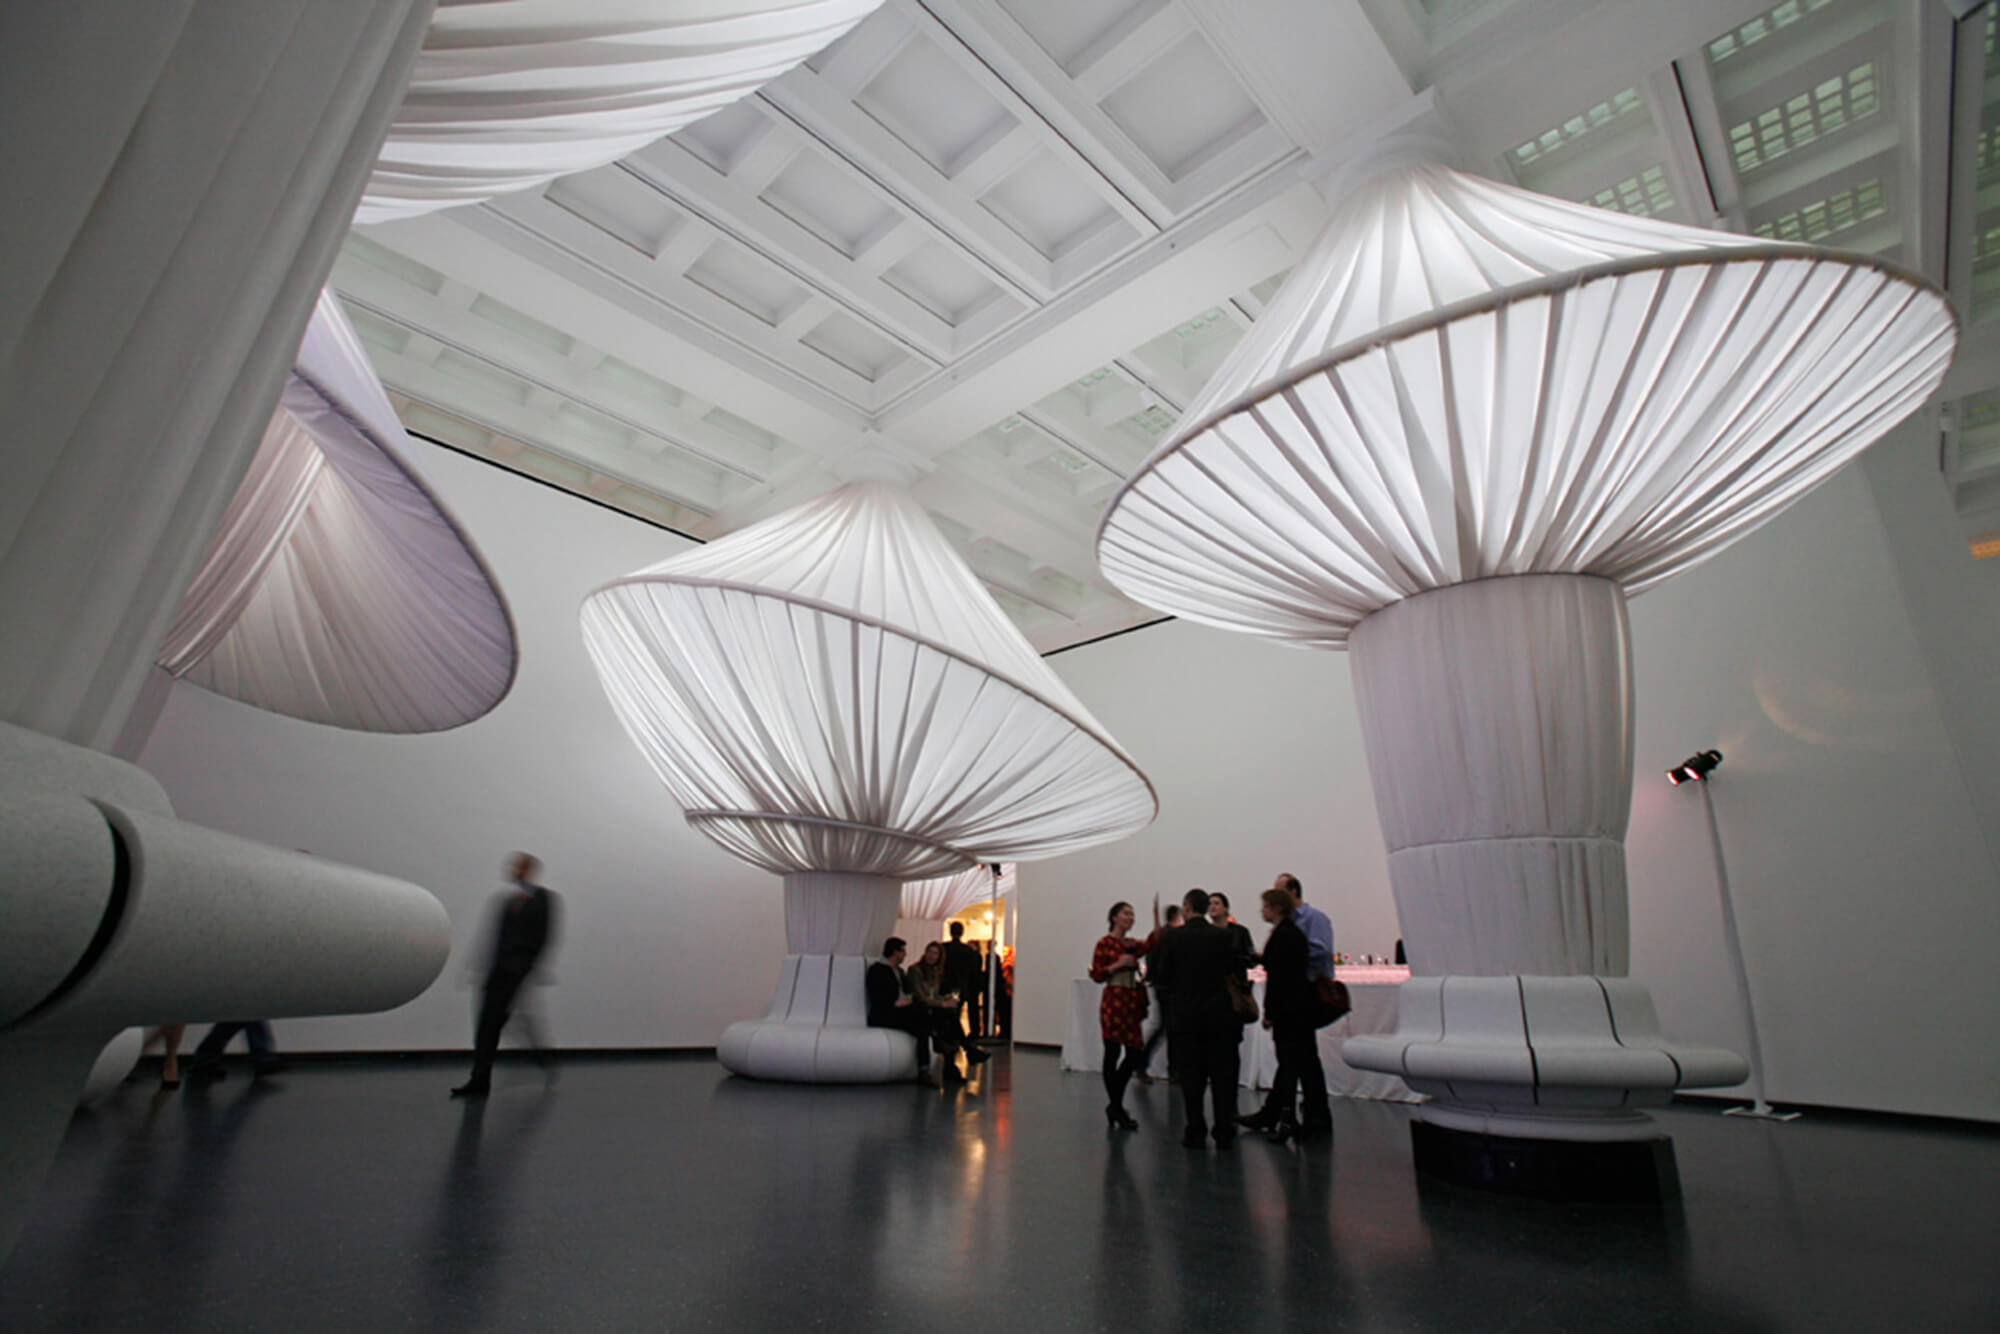 Columnas hechas de tela Sunbrella blanca agregan dimensión al Gran Salón en el Museo de Brooklyn